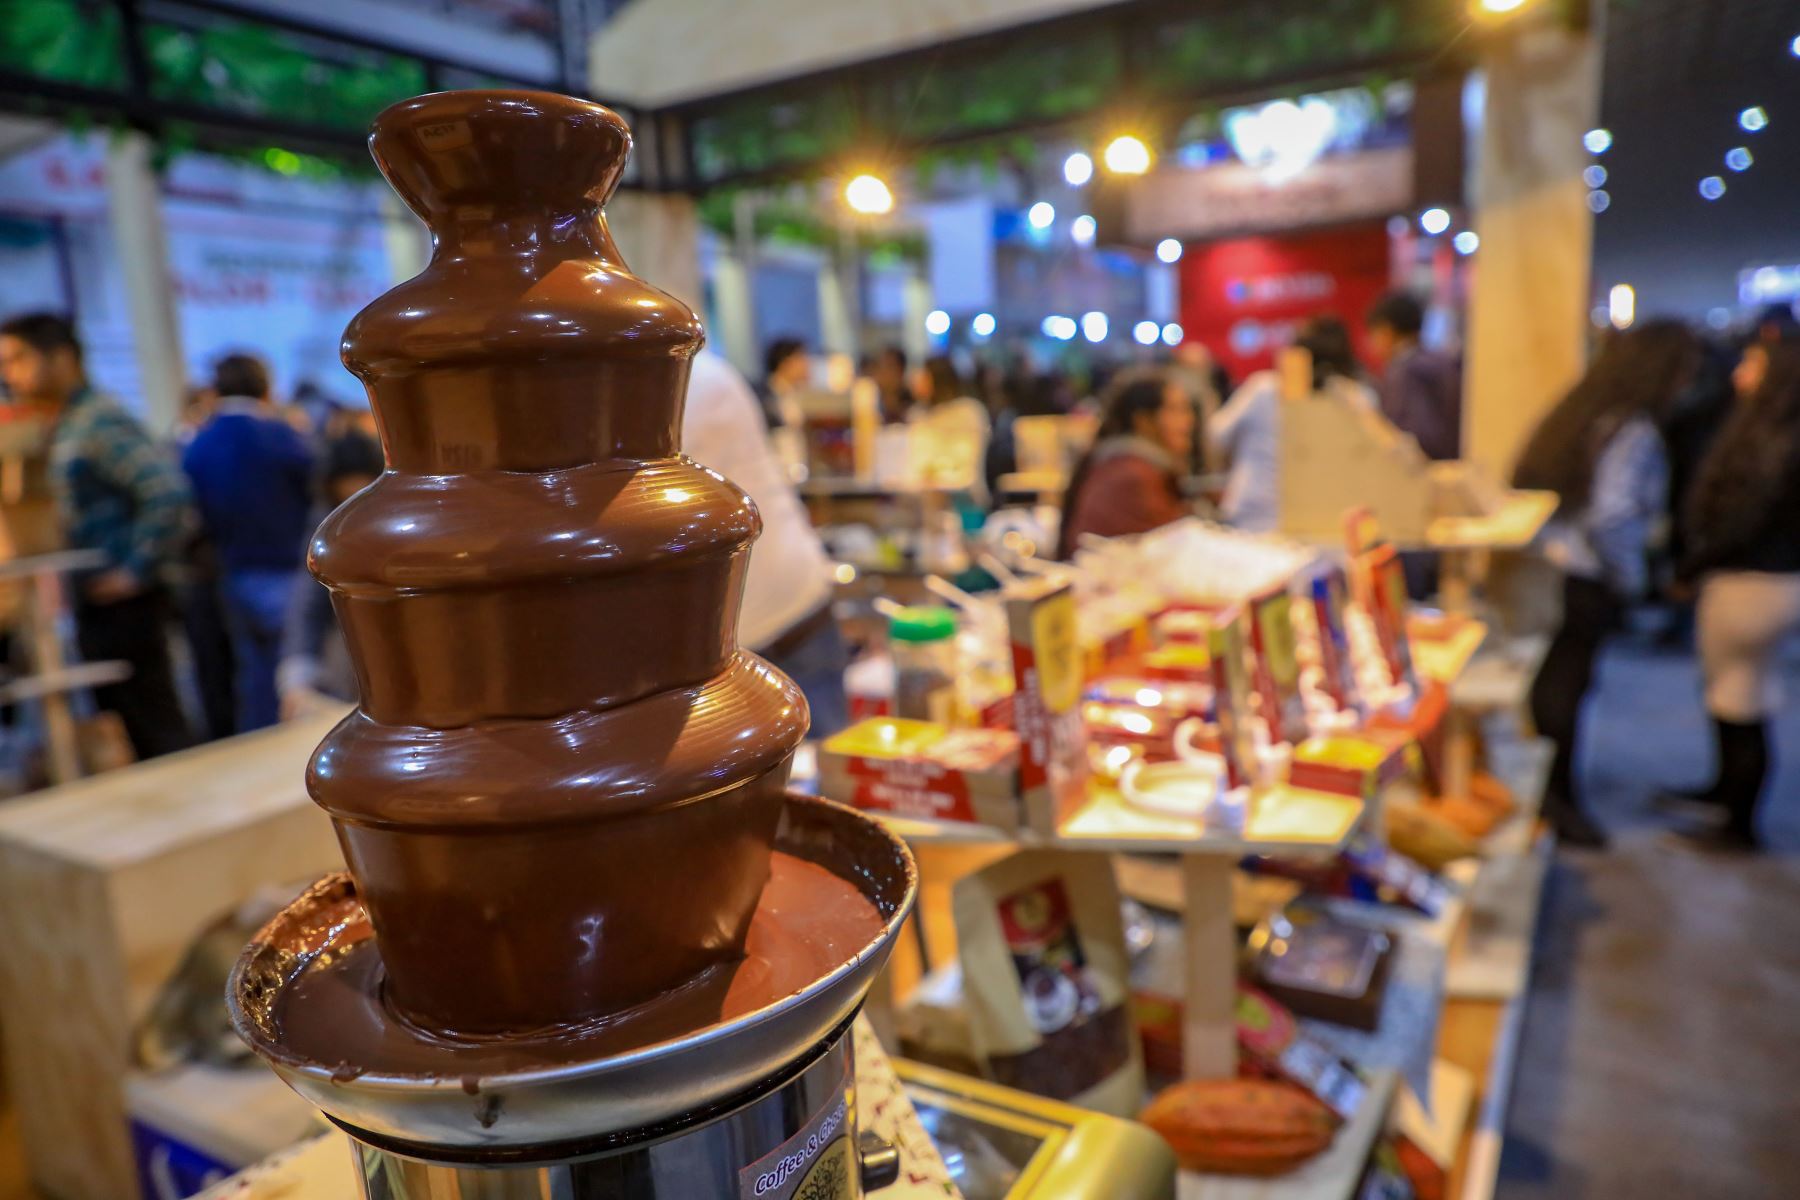 El cacao peruano conquista el mundo gracias al Salón del Cacao y Chocolate Virtual 2020 que se difunde a través de las embajadas y consulados del Perú en el extranjero. ANDINA/Difusión